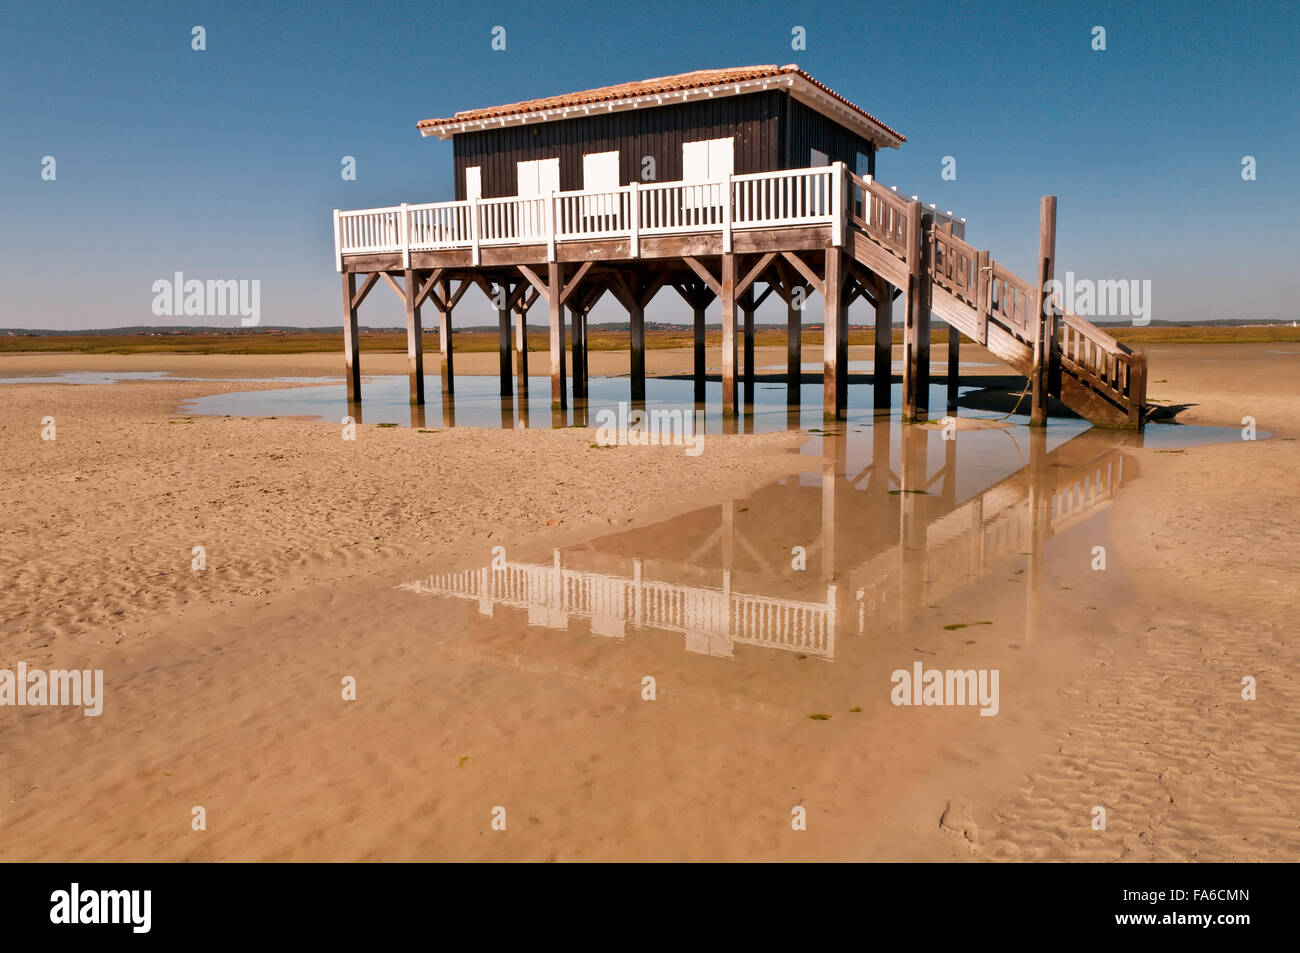 Hölzerne Baden Hütte auf Stelzen am Strand, La Teste-de-Buch, Arachon, Frankreich Stockfoto